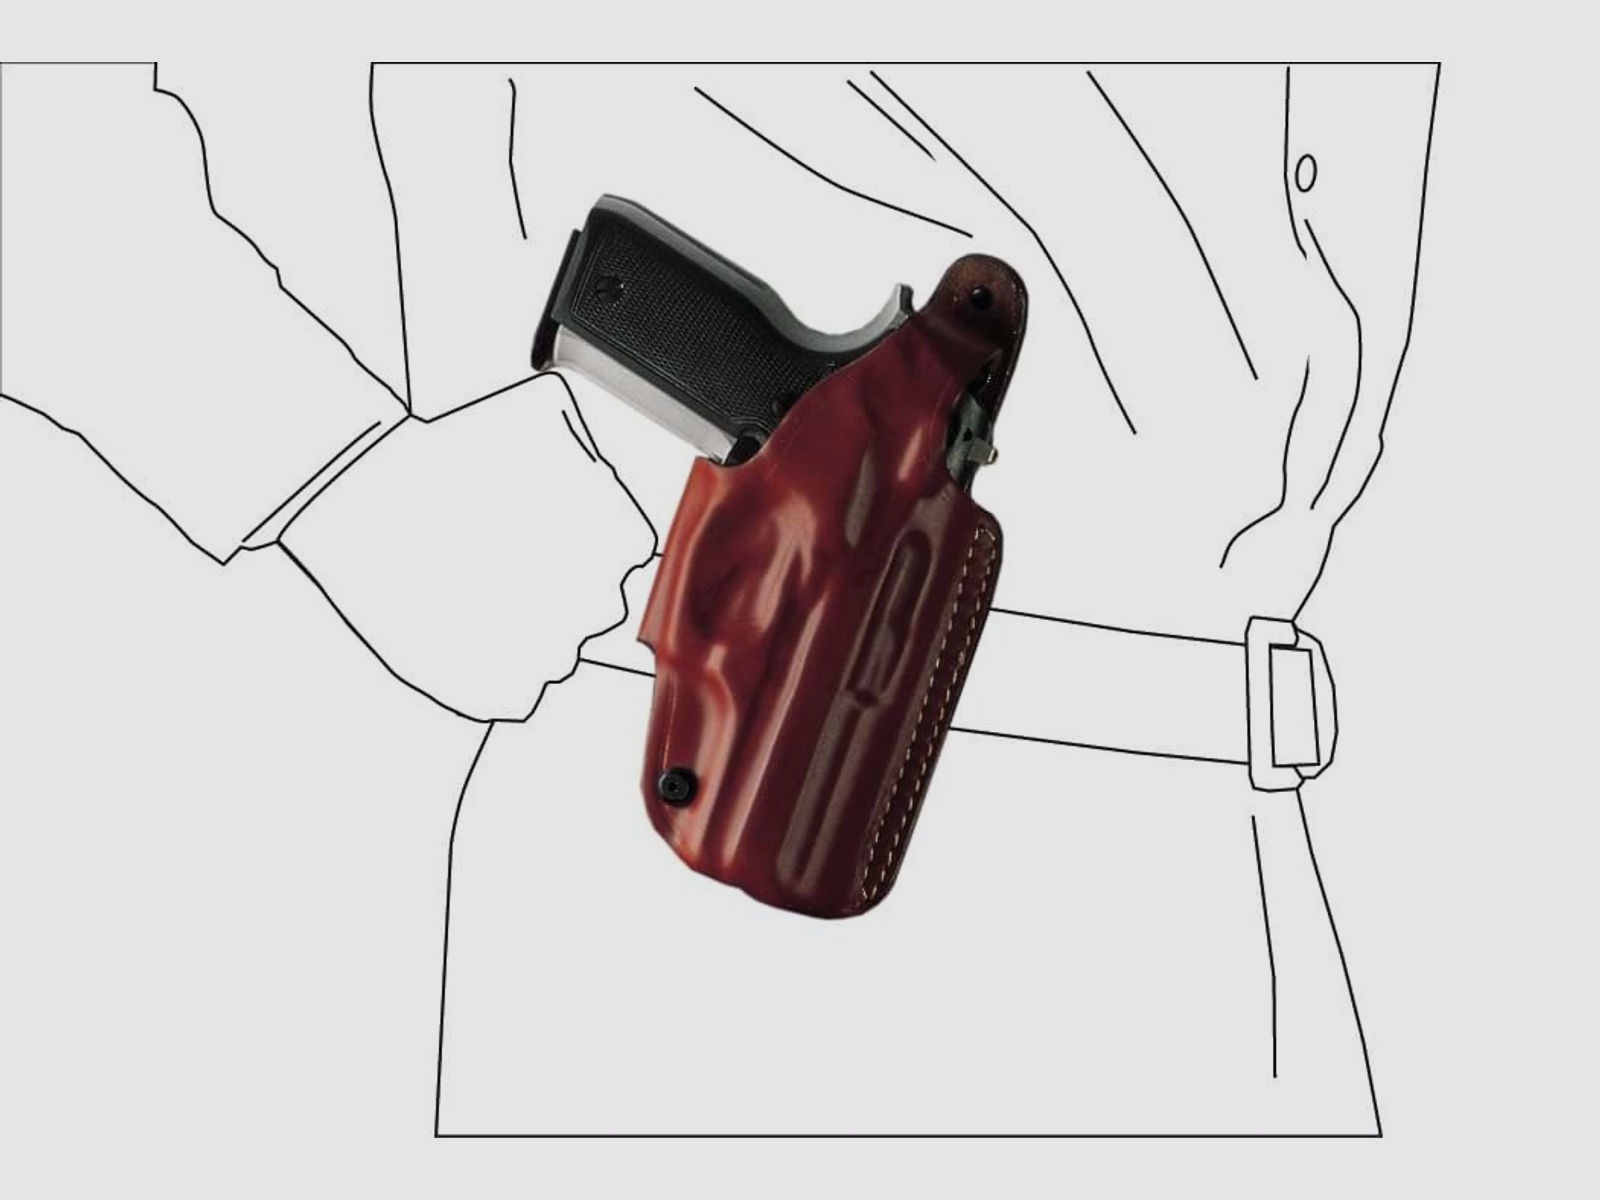 Schnellziehholster mit drei Tragepositionen Glock 29/30/36, H&K USP Compact, P30-Braun-Rechtshänder